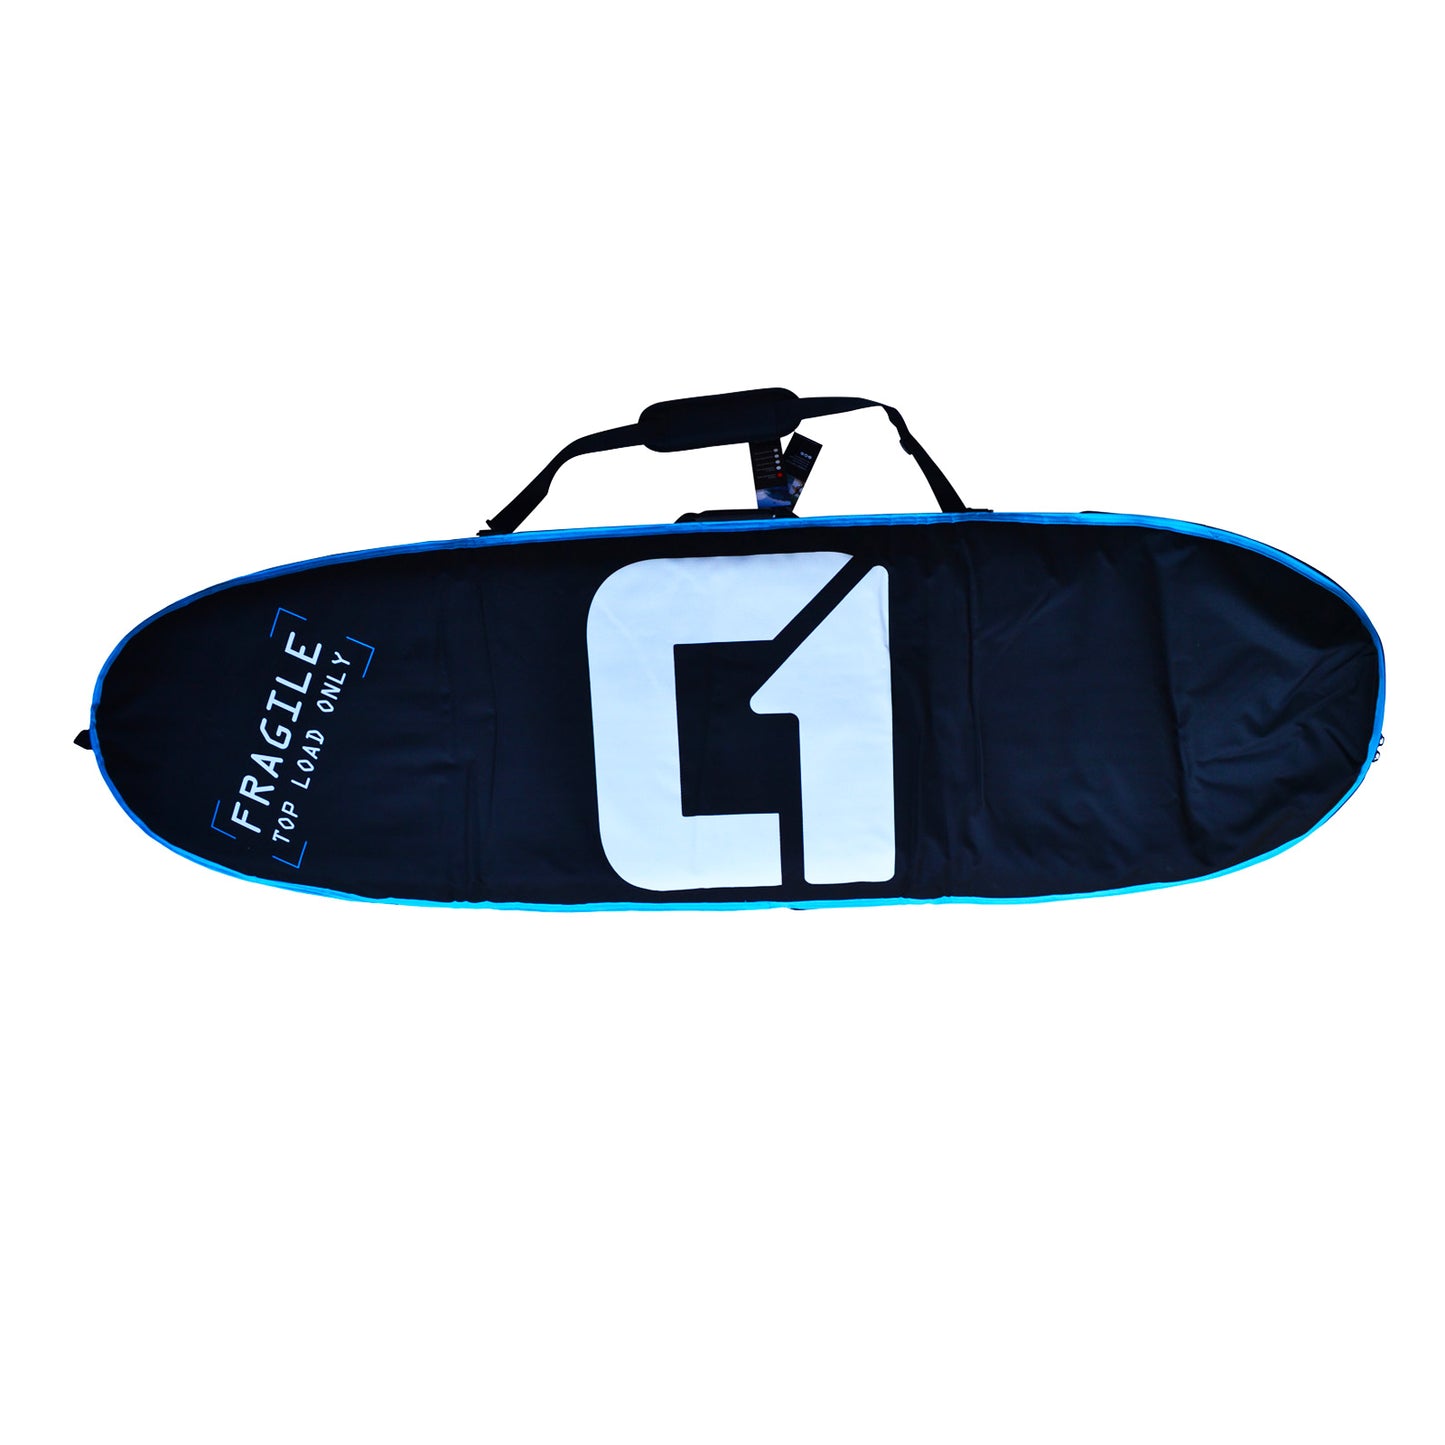 9ft Razor Longboard Surfboard Package – Includes Bag, Fins, Wax & Leash | Funky Town Shop